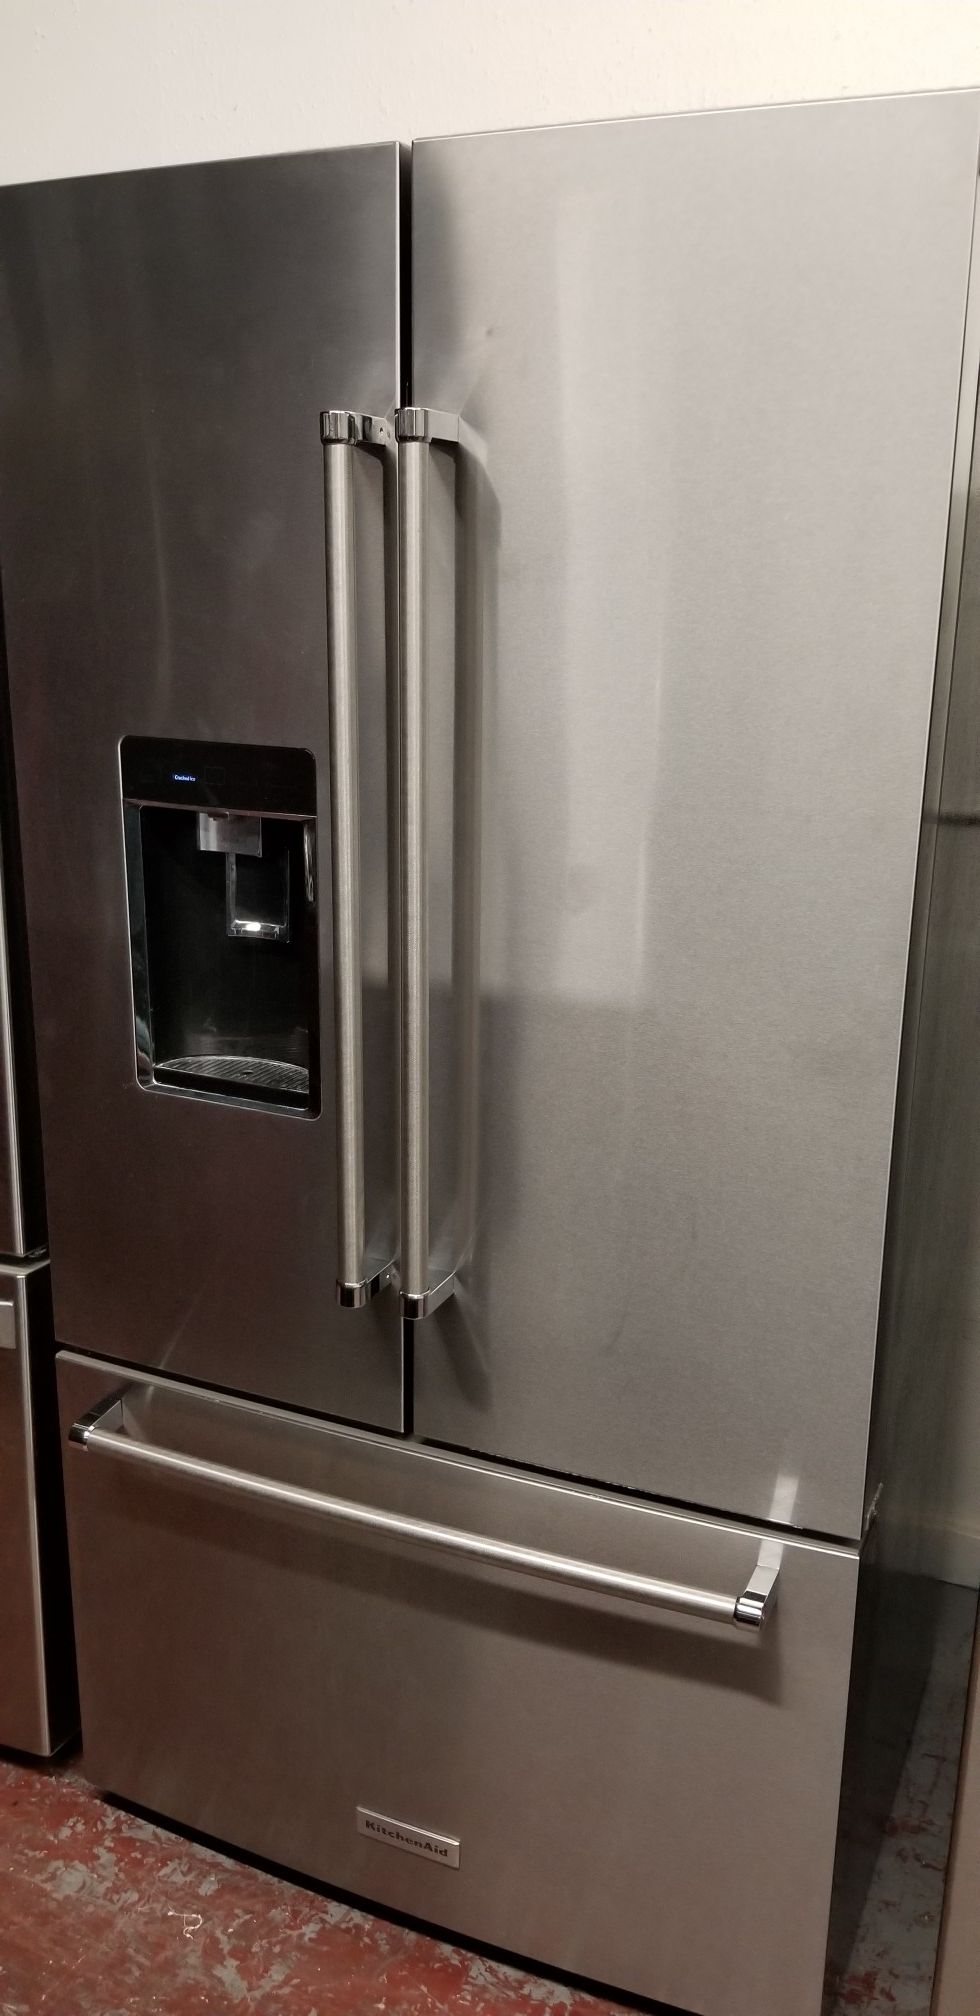 Kitchen aid refrigerator 3 door stainless steel